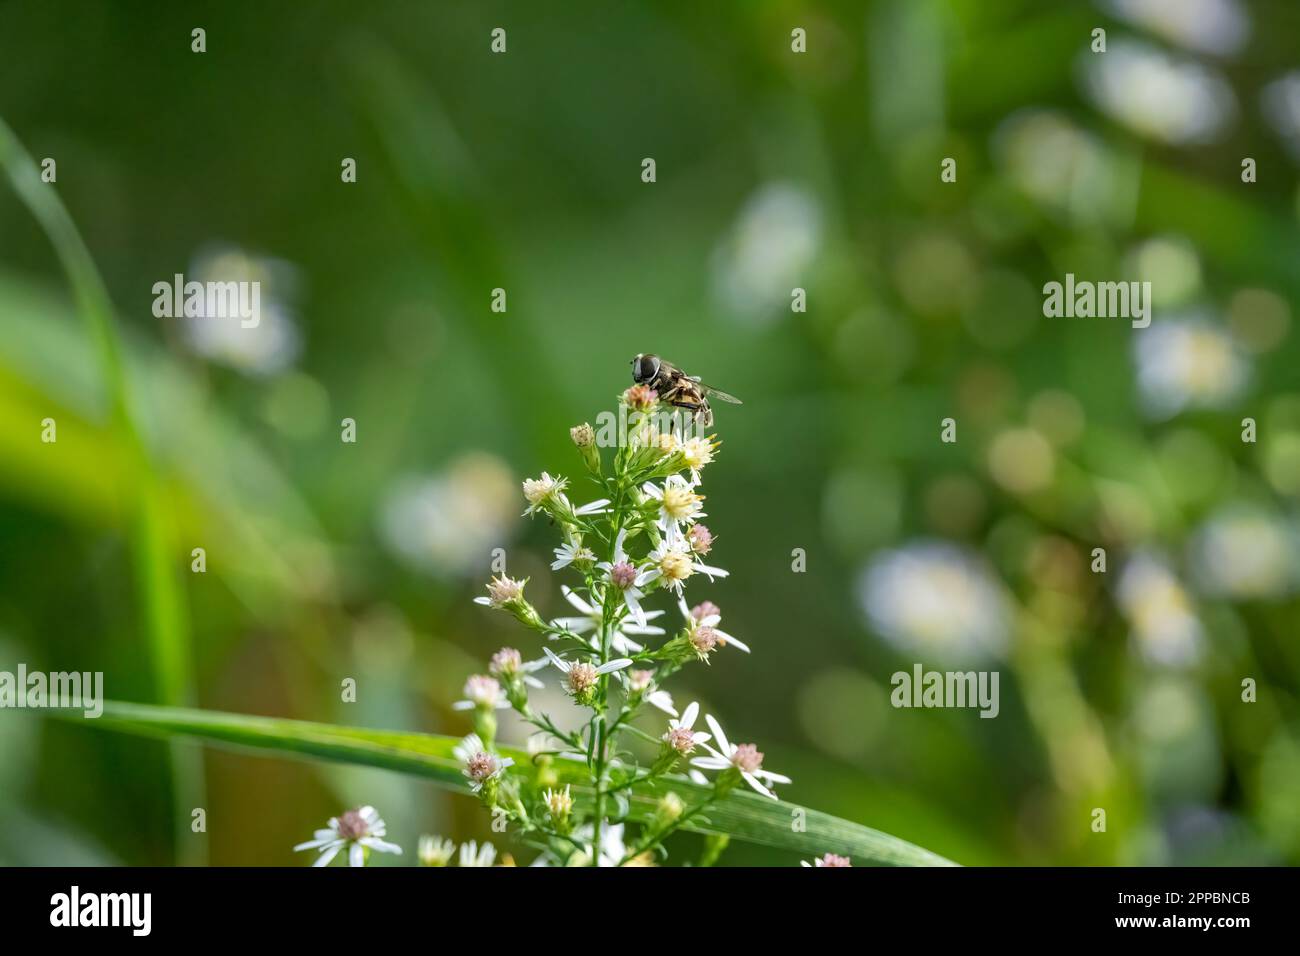 gros plan d'un petit insecte semblable à une abeille sur des fleurs Banque D'Images